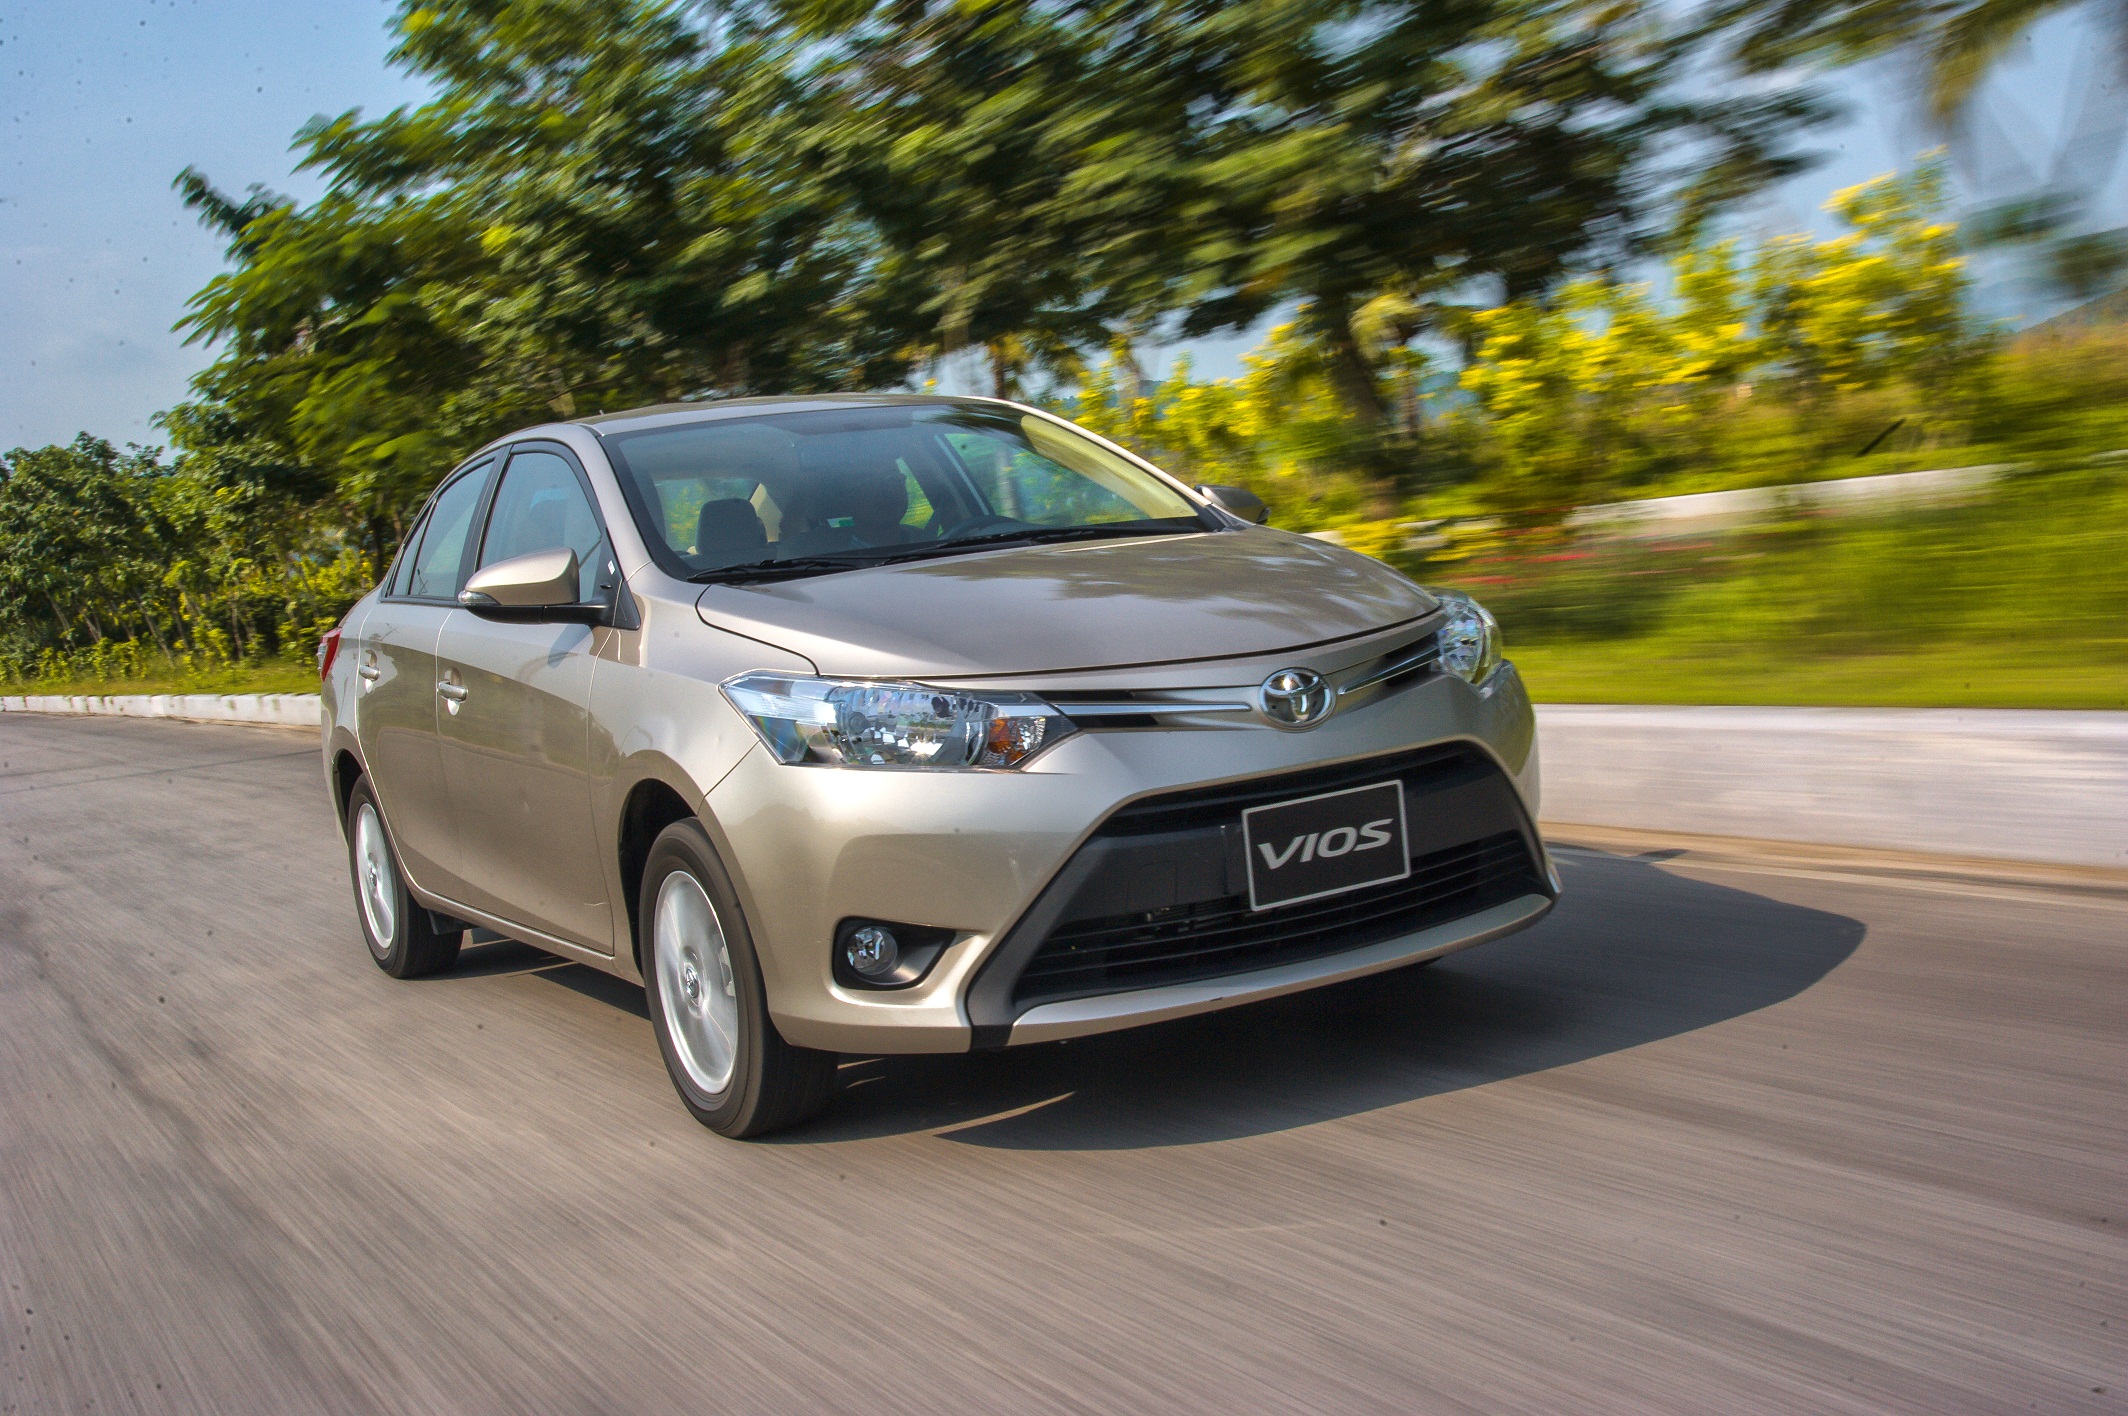 1. Toyota Vios: 1.033 xe- Luôn dẫn đầu danh sách 5 xe hạng B bán chạy nhất nói riêng và 10 ô tô bán chạy nhất Việt Nam nói chung, Toyota Vios có doanh số trong tháng 2 vừa qua đạt 1.033 xe, tăng 61% so với cùng kỳ năm 2016. Cộng dồn 2 tháng đầu năm, doanh số Toyota Vios đạt 2.737 xe, tăng 37% so với cùng kỳ năm ngoái. Hiện tại, Toyota Vios bán ra thị trường 4 phiên bản khác nhau, sử dụng 2 loại động cơ 1.5L và 1.3L với giá từ 588 -622 triệu đồng.